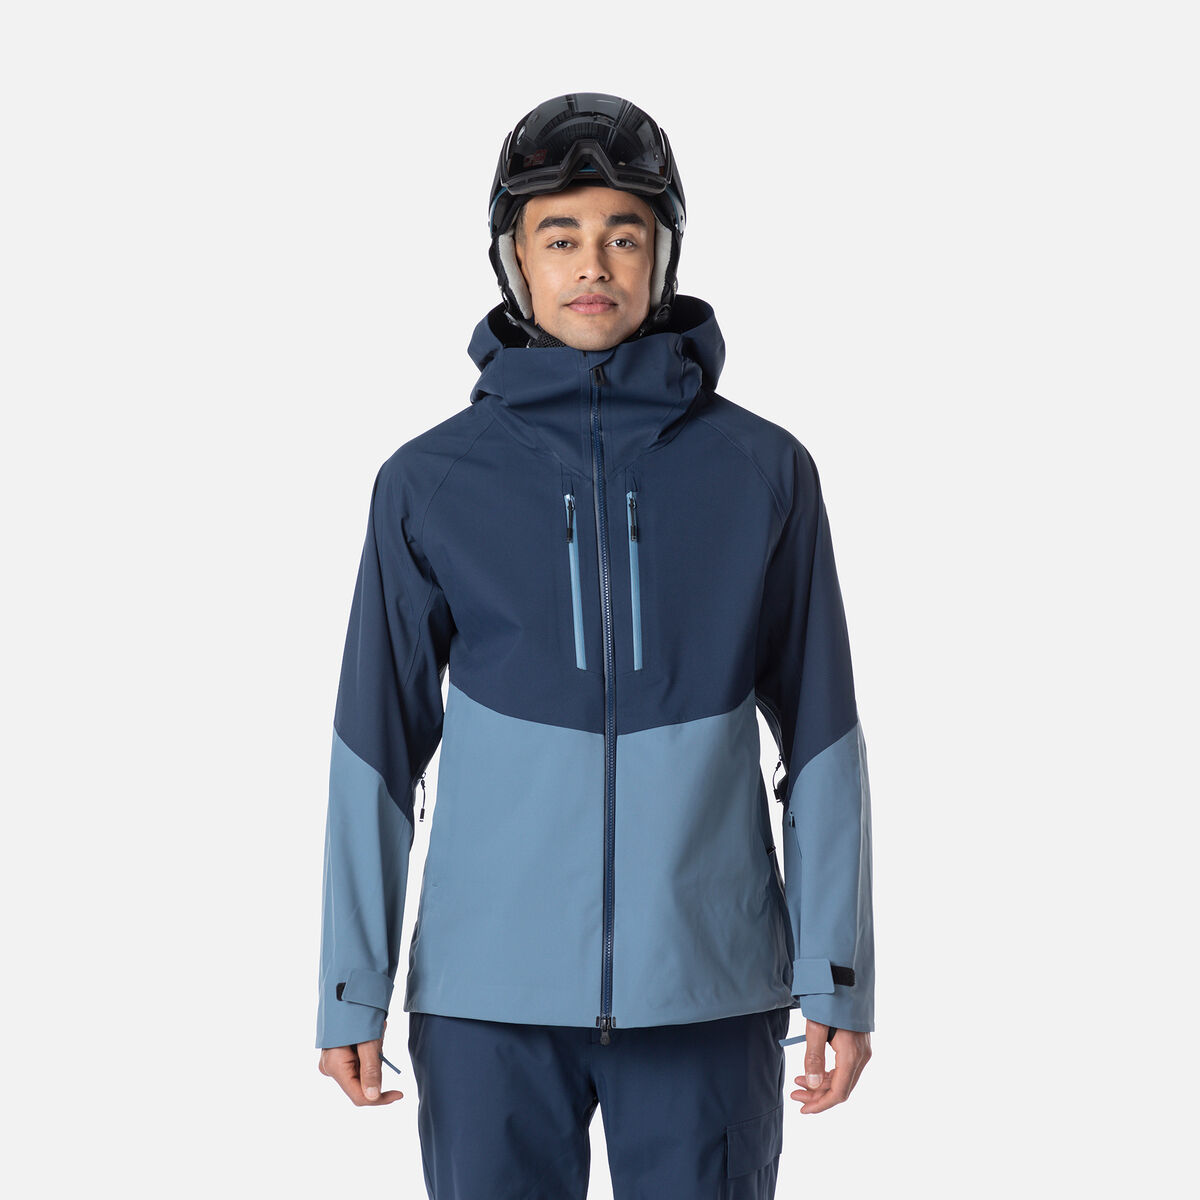 Rossignol Men's Evader Ski Jacket Blue